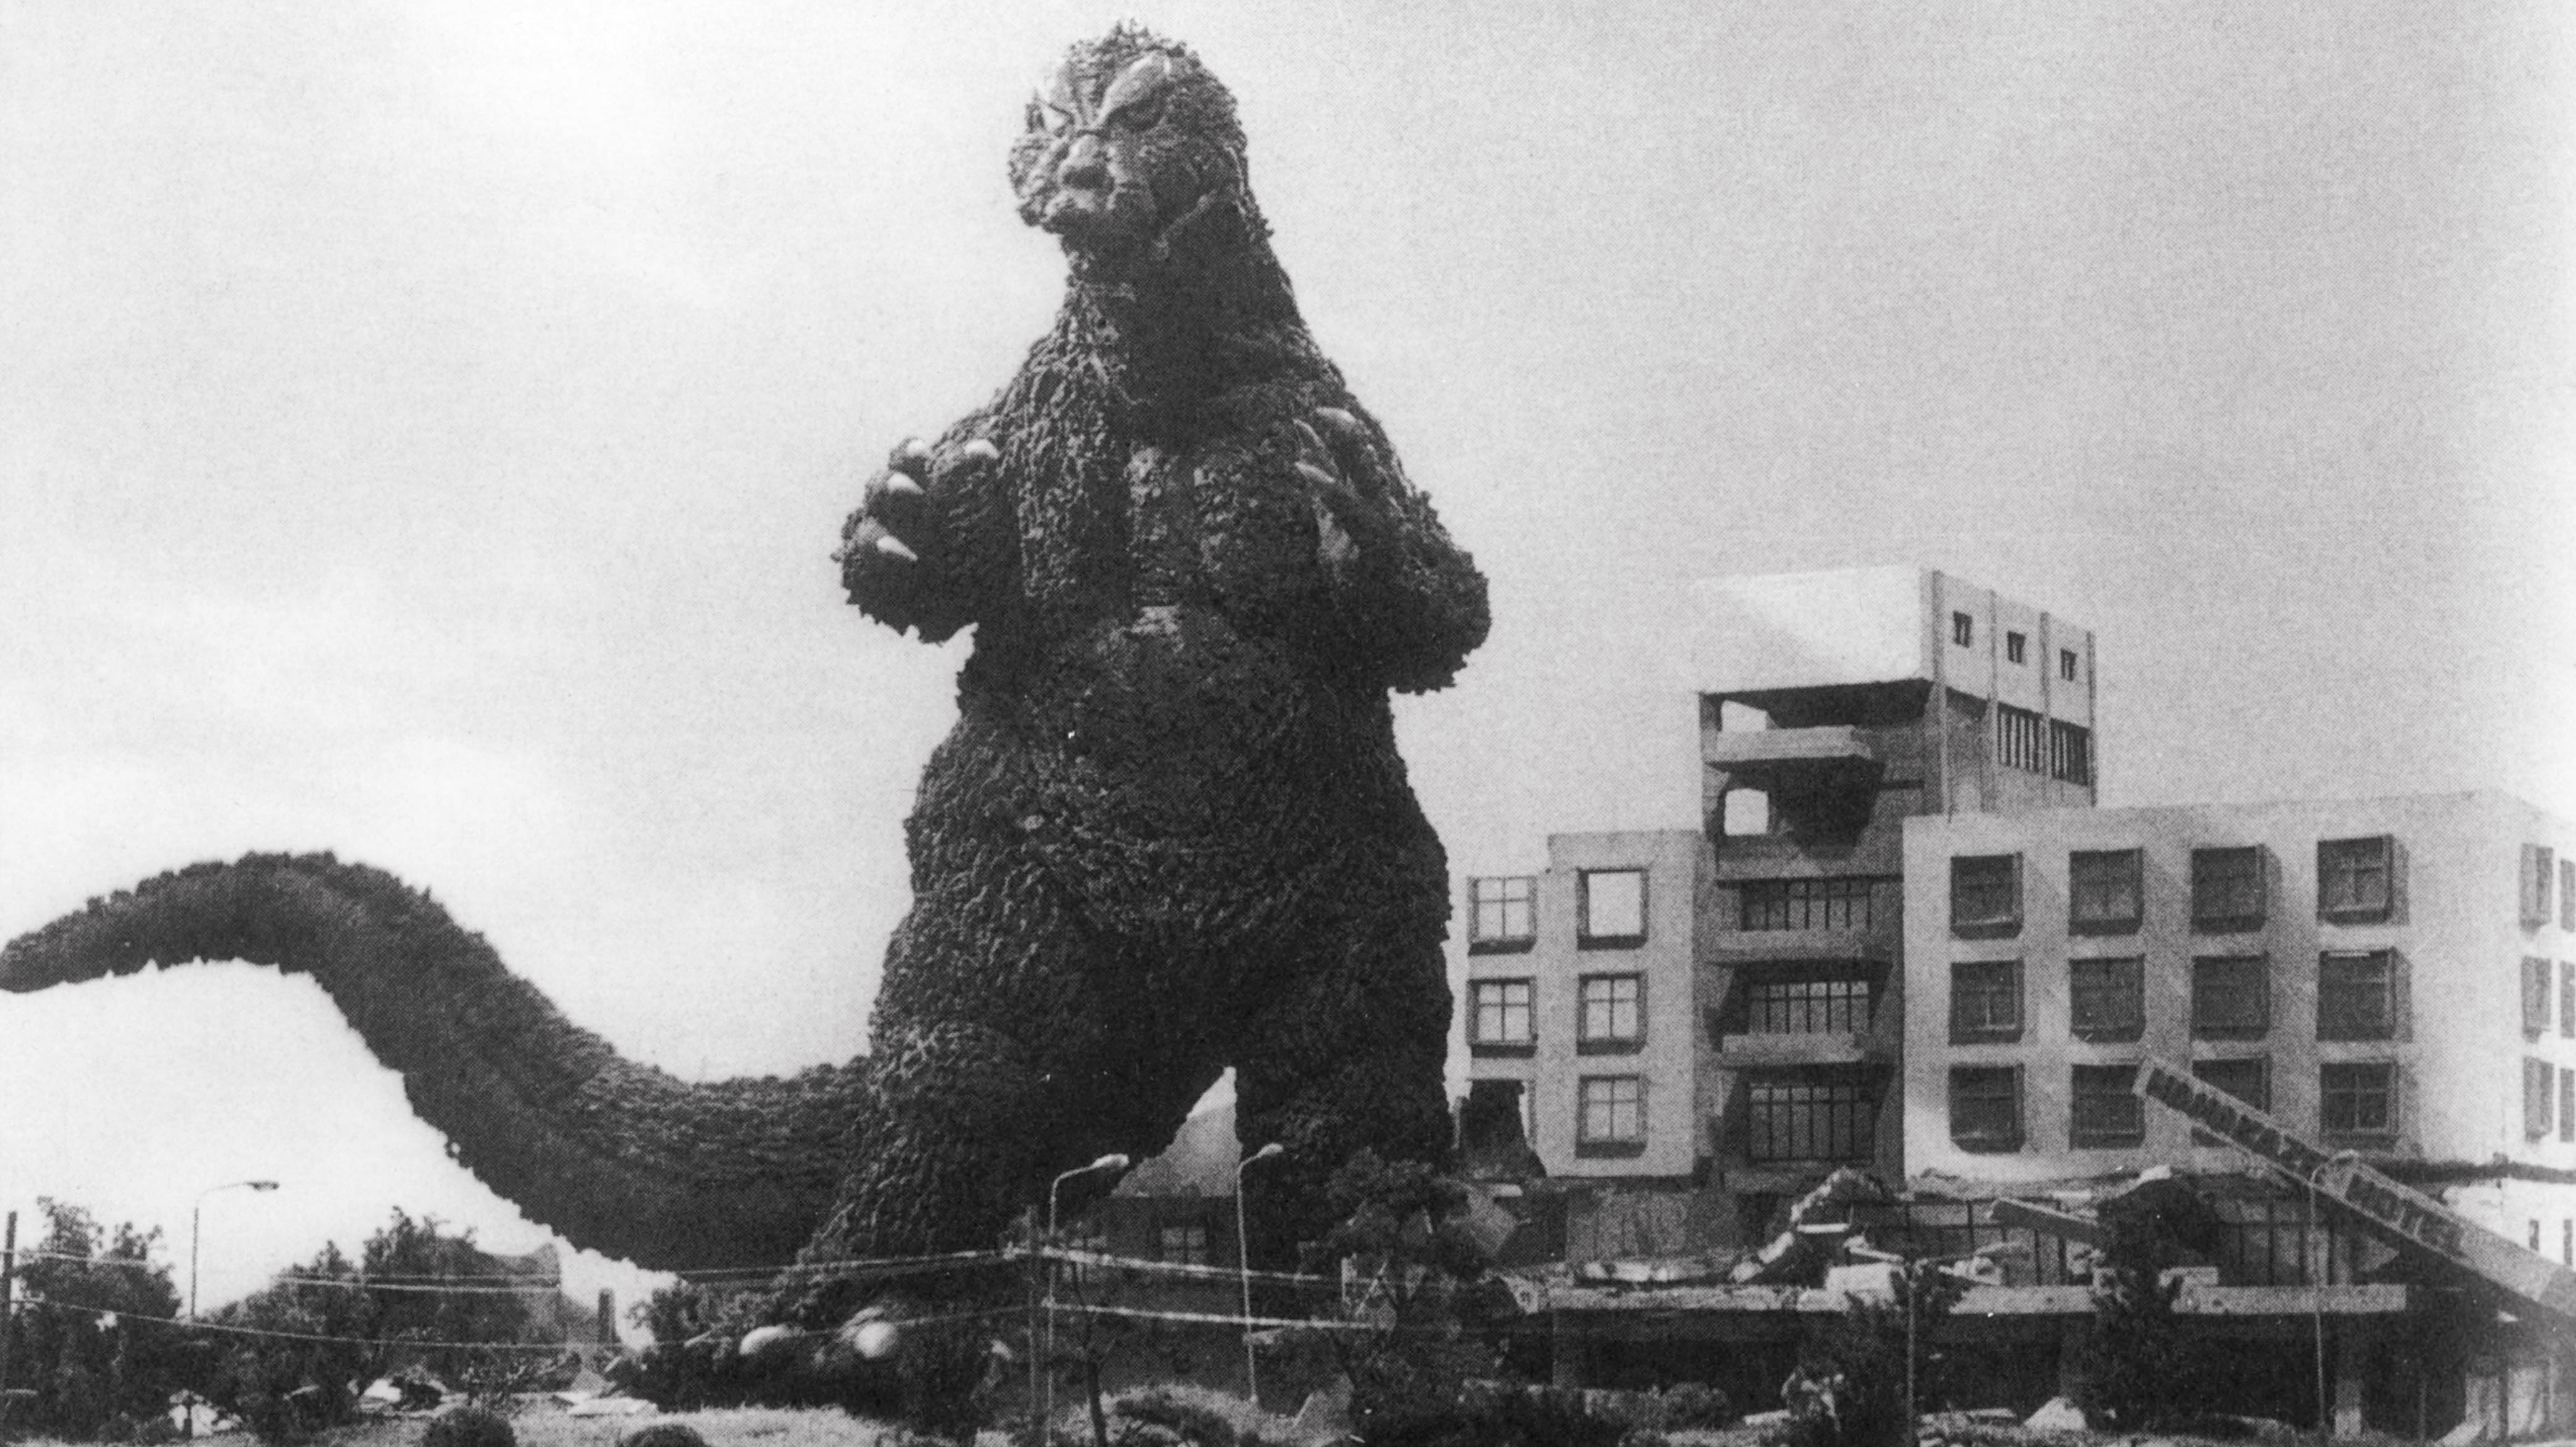 More Things Godzilla Could Smash